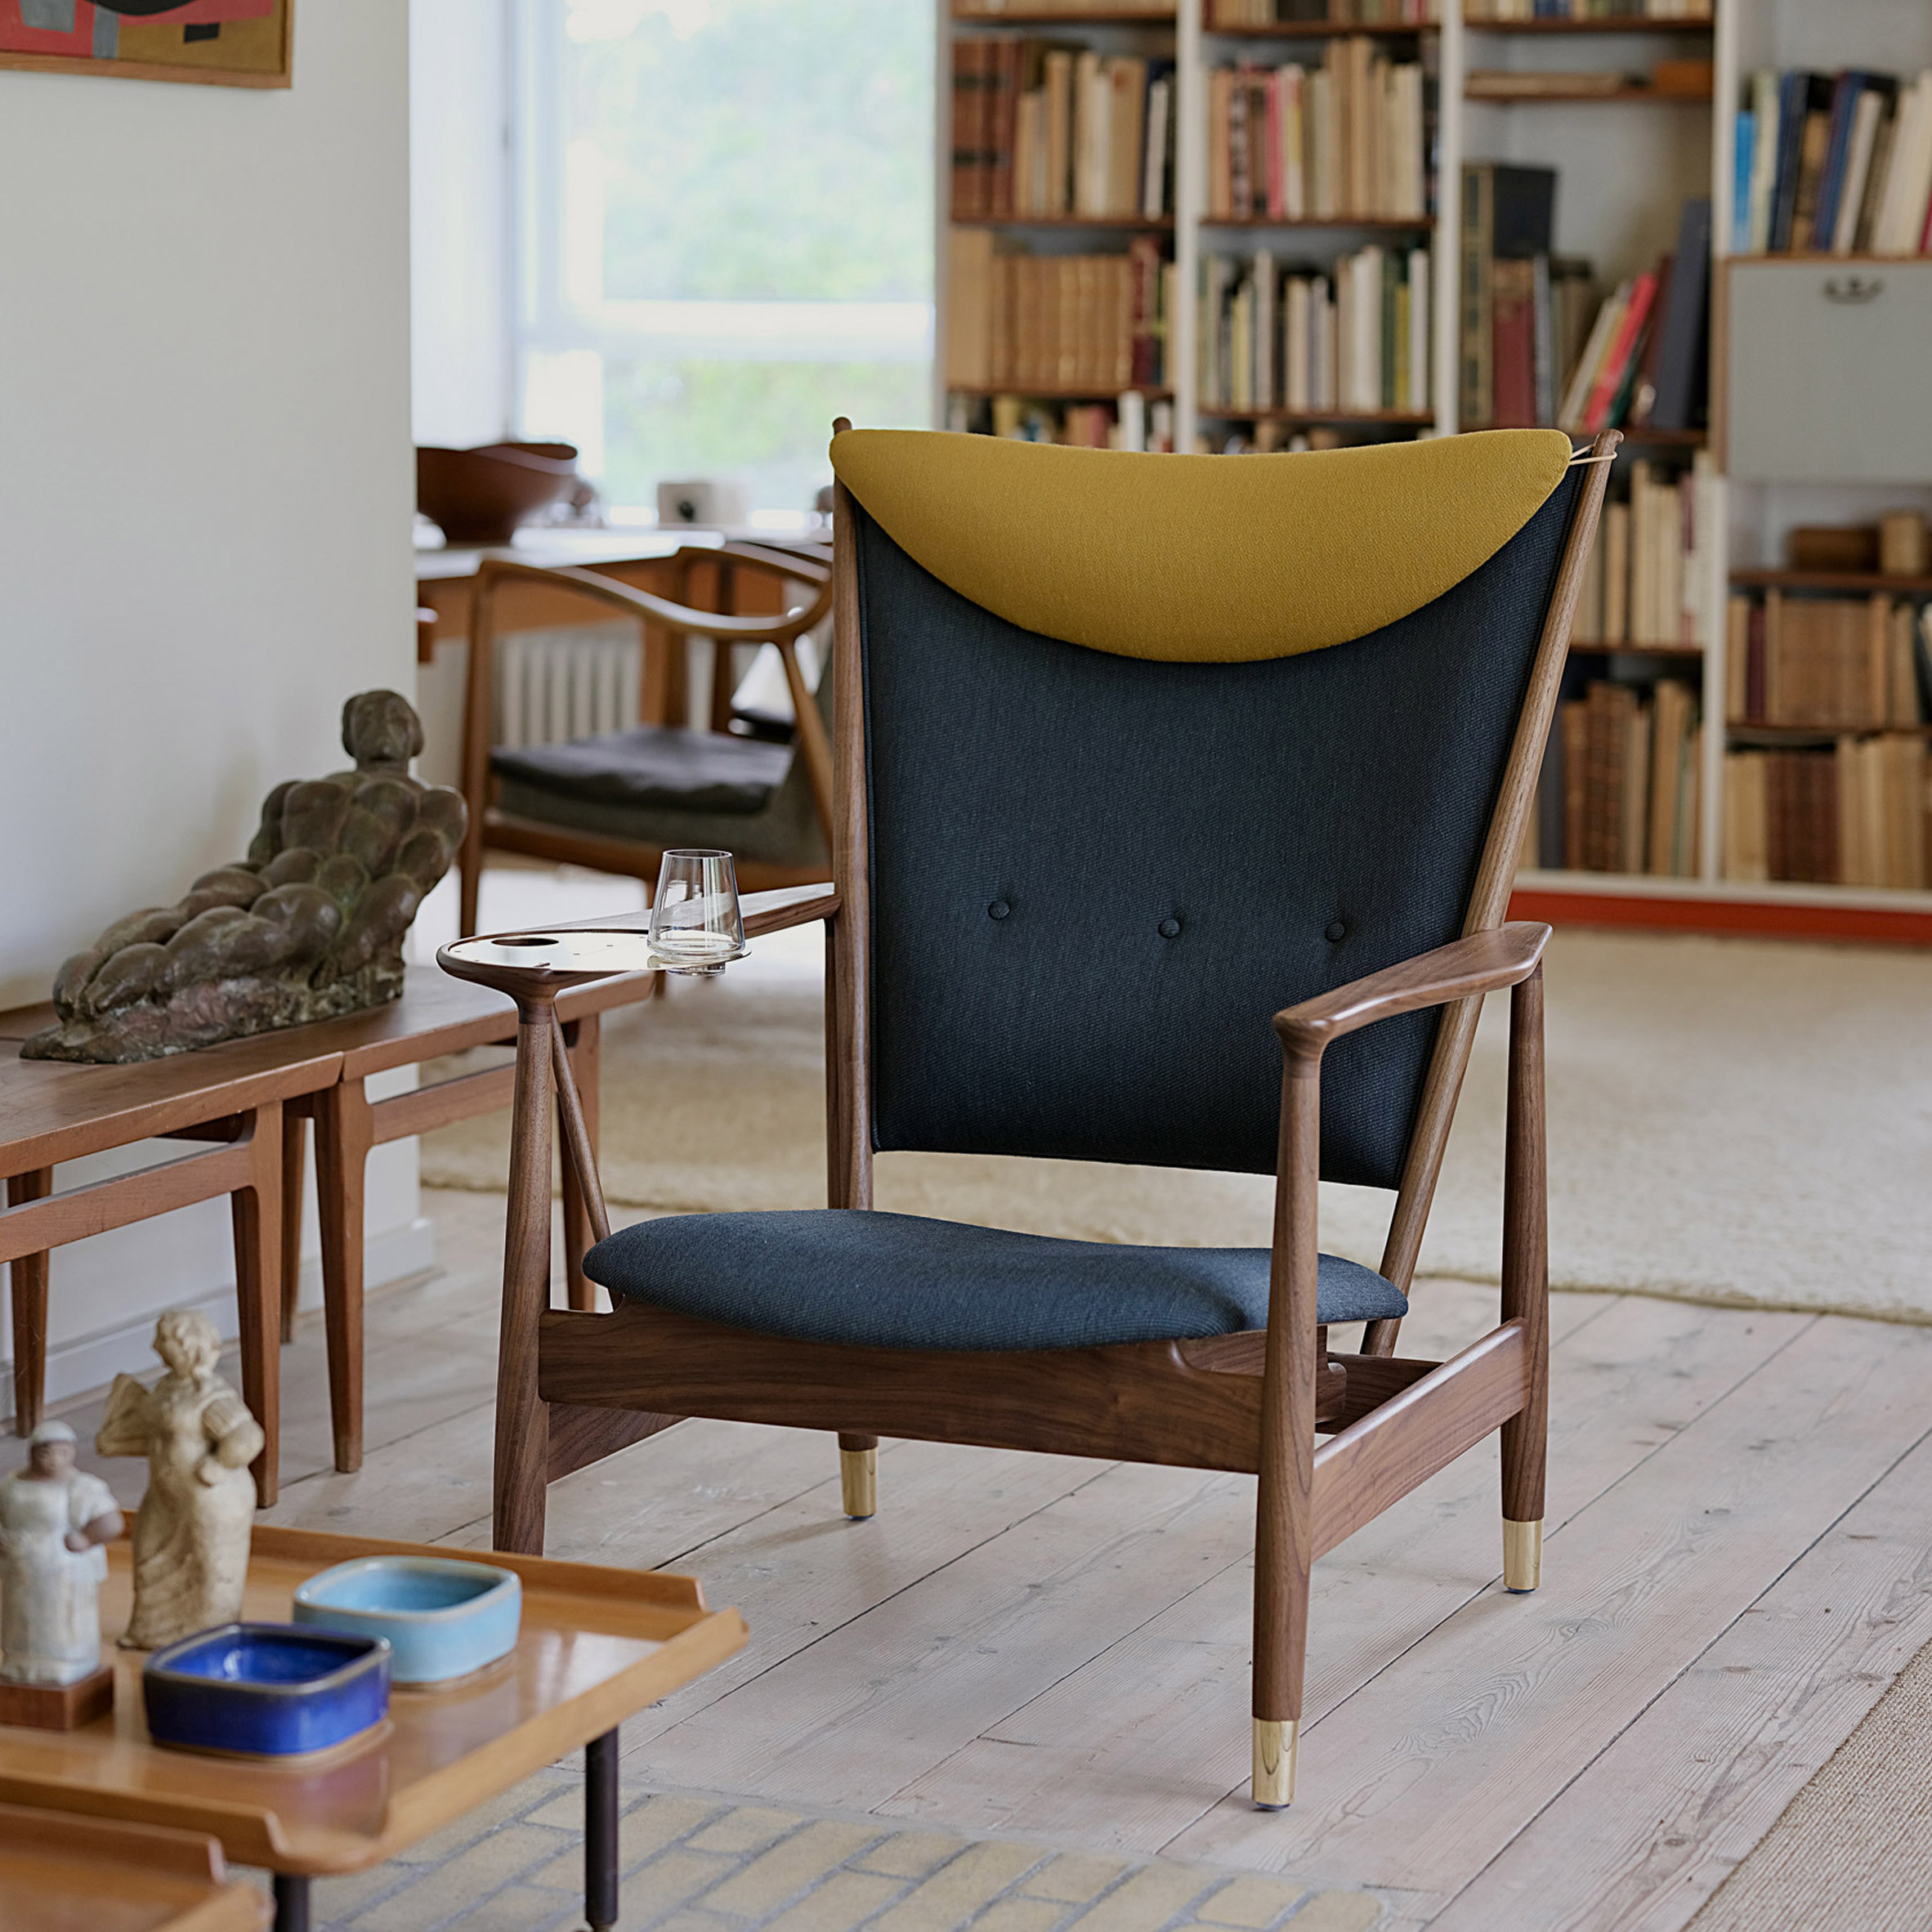 Whiskey chair by Finn Juhl through House of Finn Juhl in a lounge area